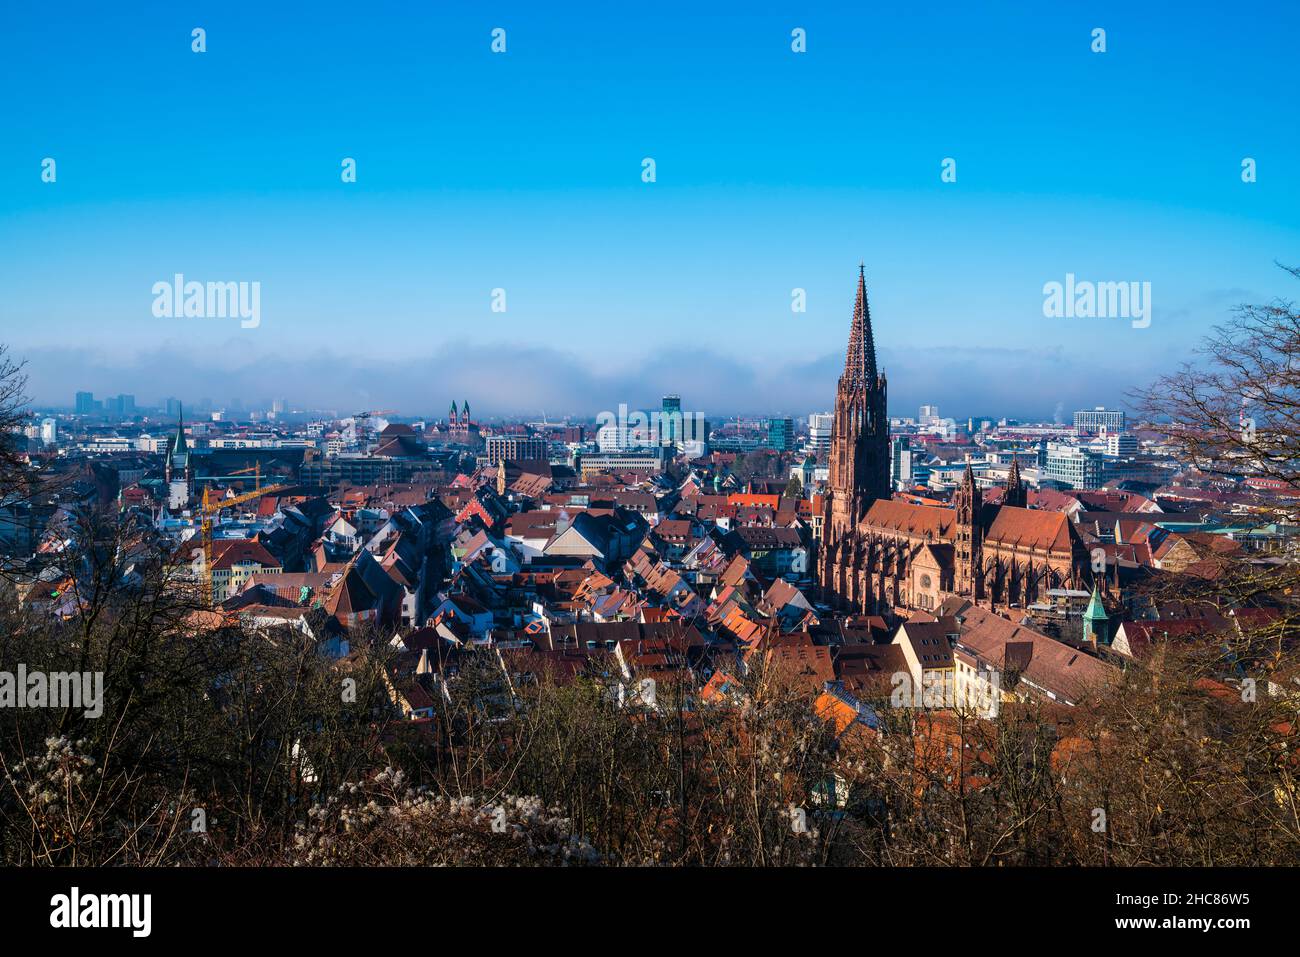 Alemania, Freiburg im Breisgau paisaje urbano, antigua catedral gótica de muenster en invierno con una atmósfera niebla, vista panorámica sobre la puesta de sol Foto de stock